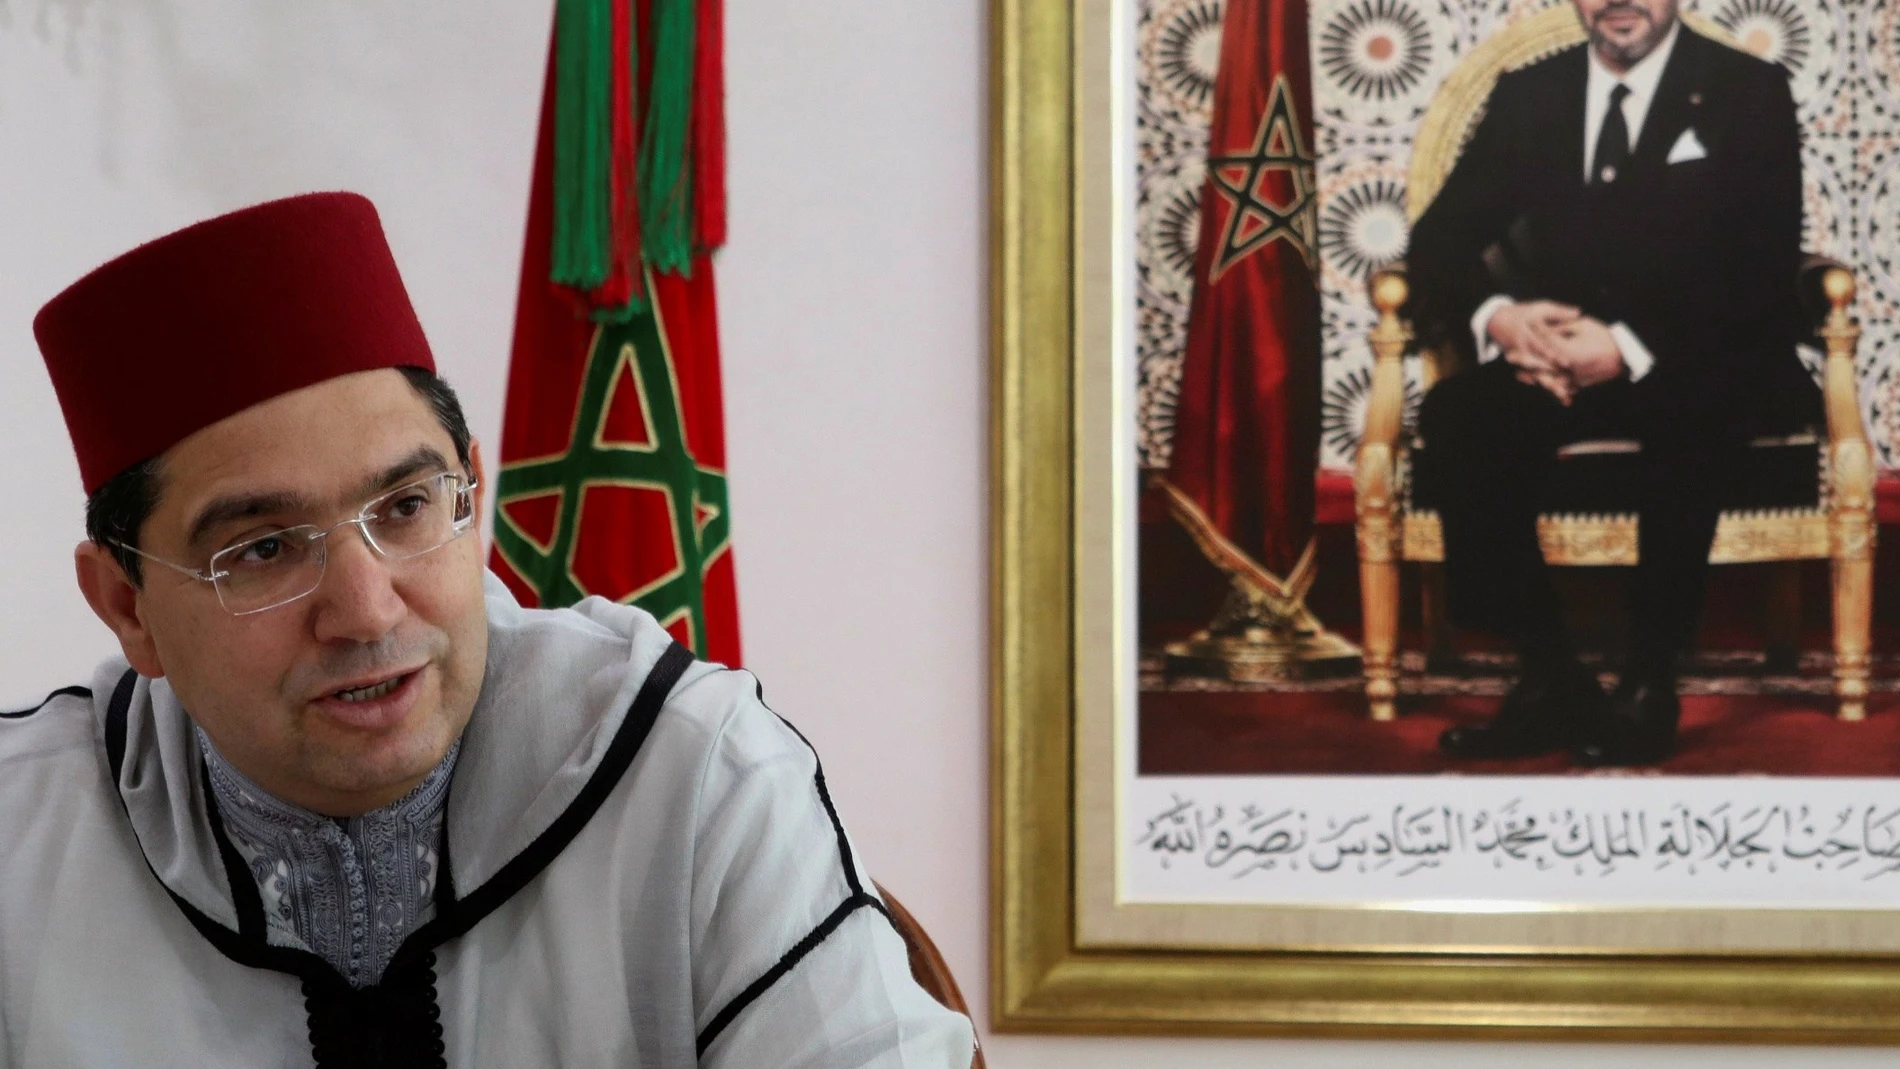 El ministro marroquí de Asuntos Exteriores, Naser Burita, vuelve a amenazar a España